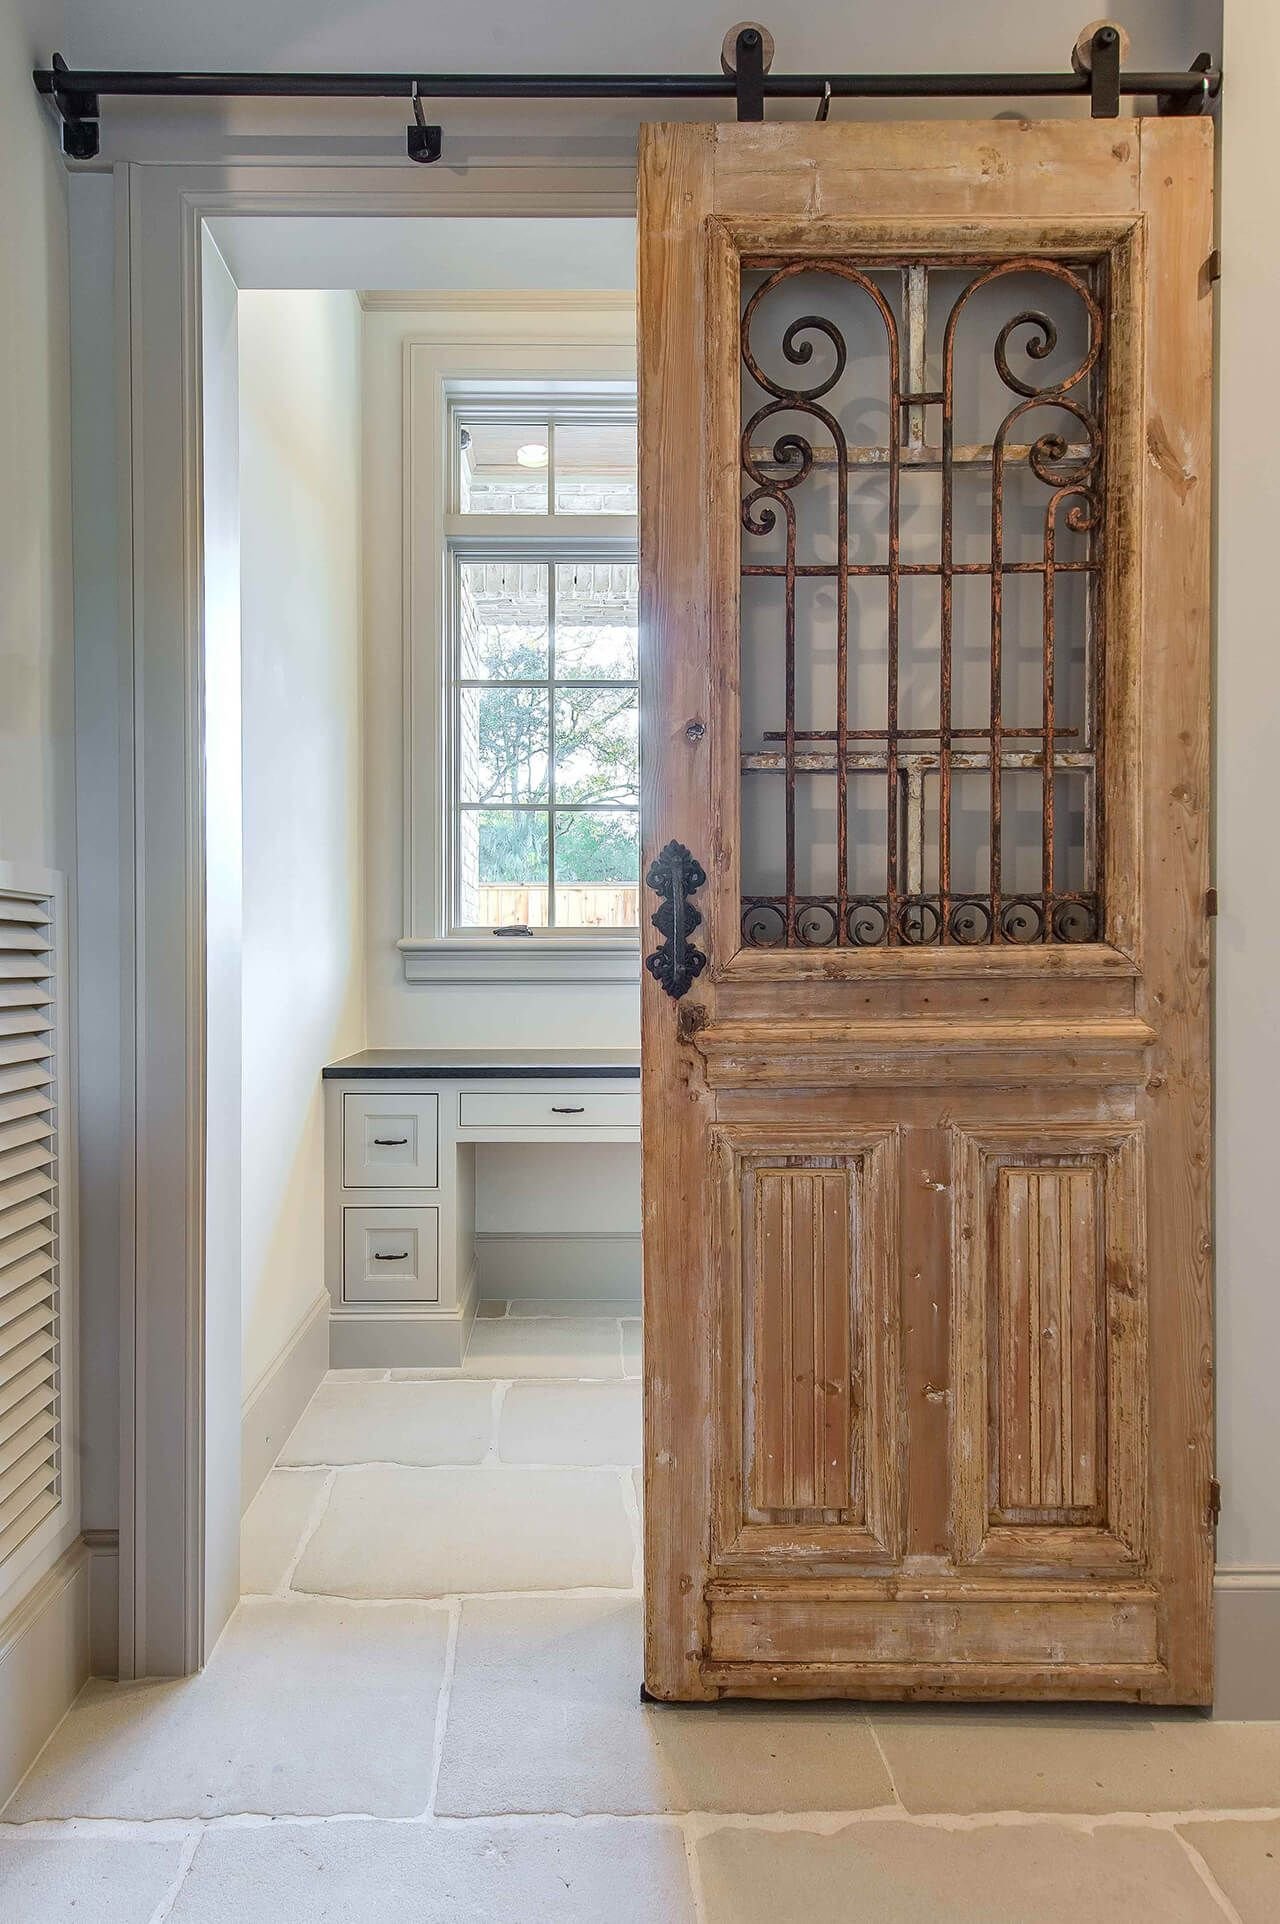 Retro doors. Старая деревянная дверь. Старые двери в интерьере. Старинные двери в интерьере. Старая дверь винтрьере.